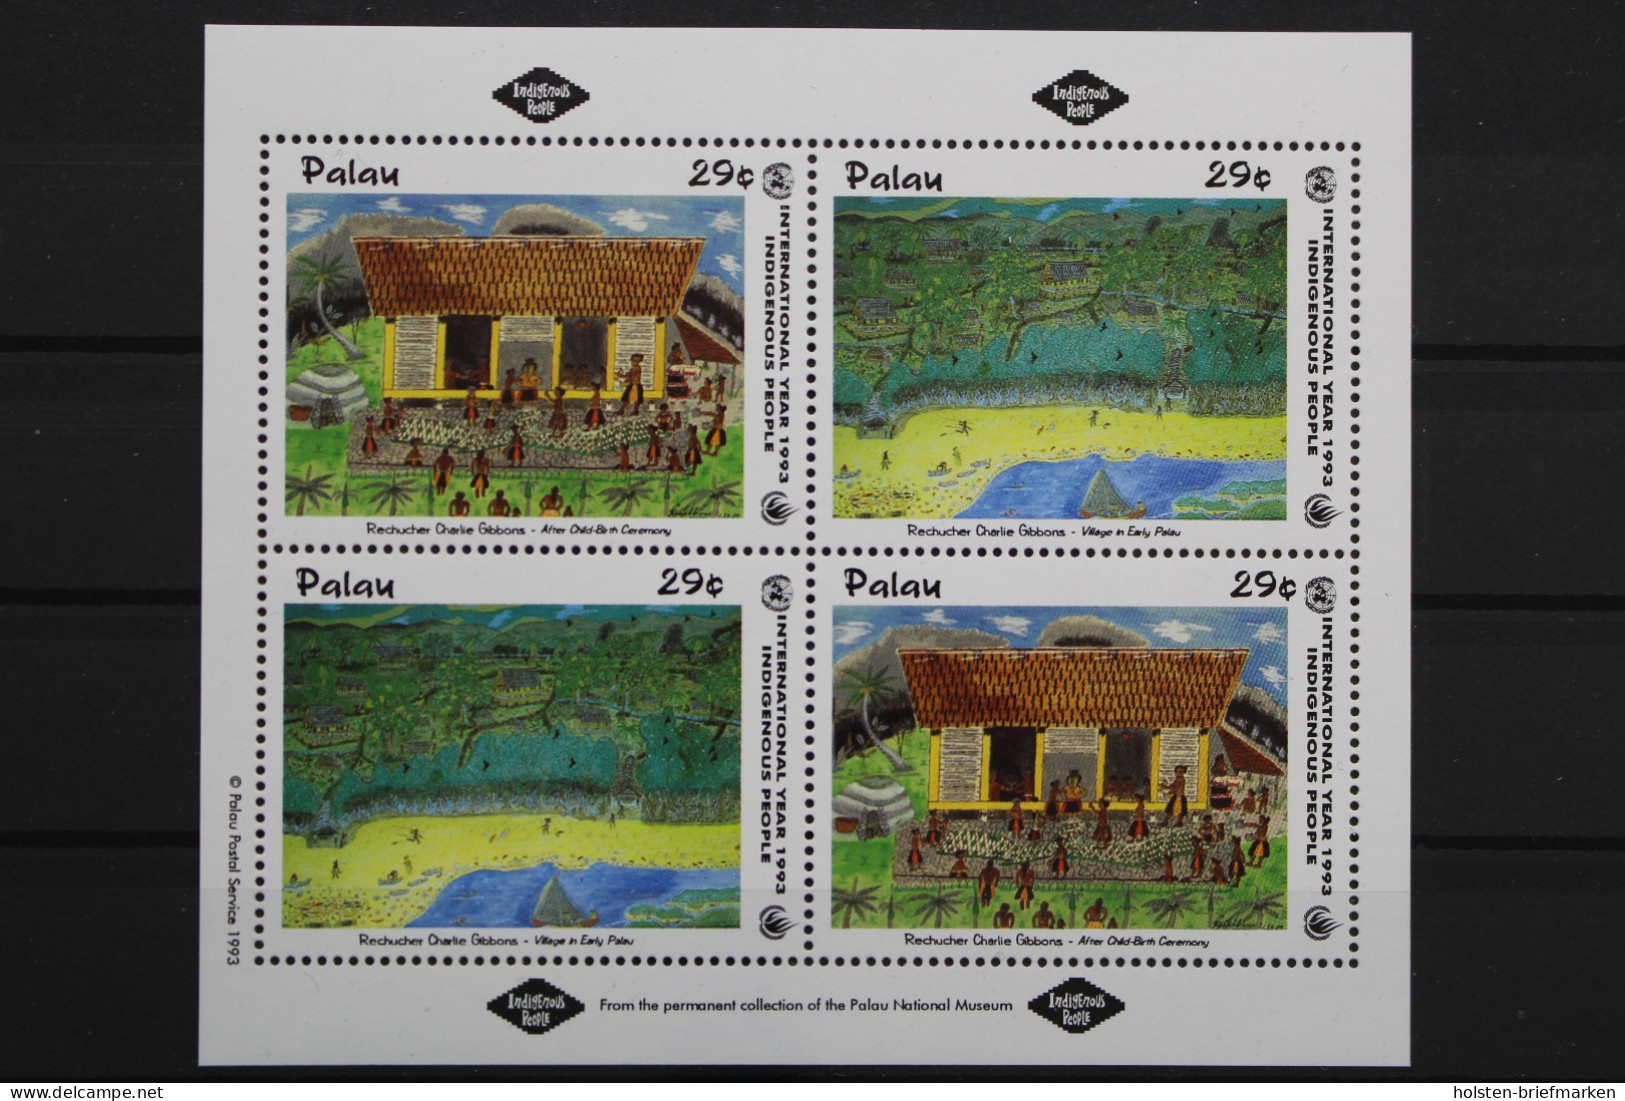 Palau, MiNr. 658-659, Kleinbogen, Postfrisch - Palau